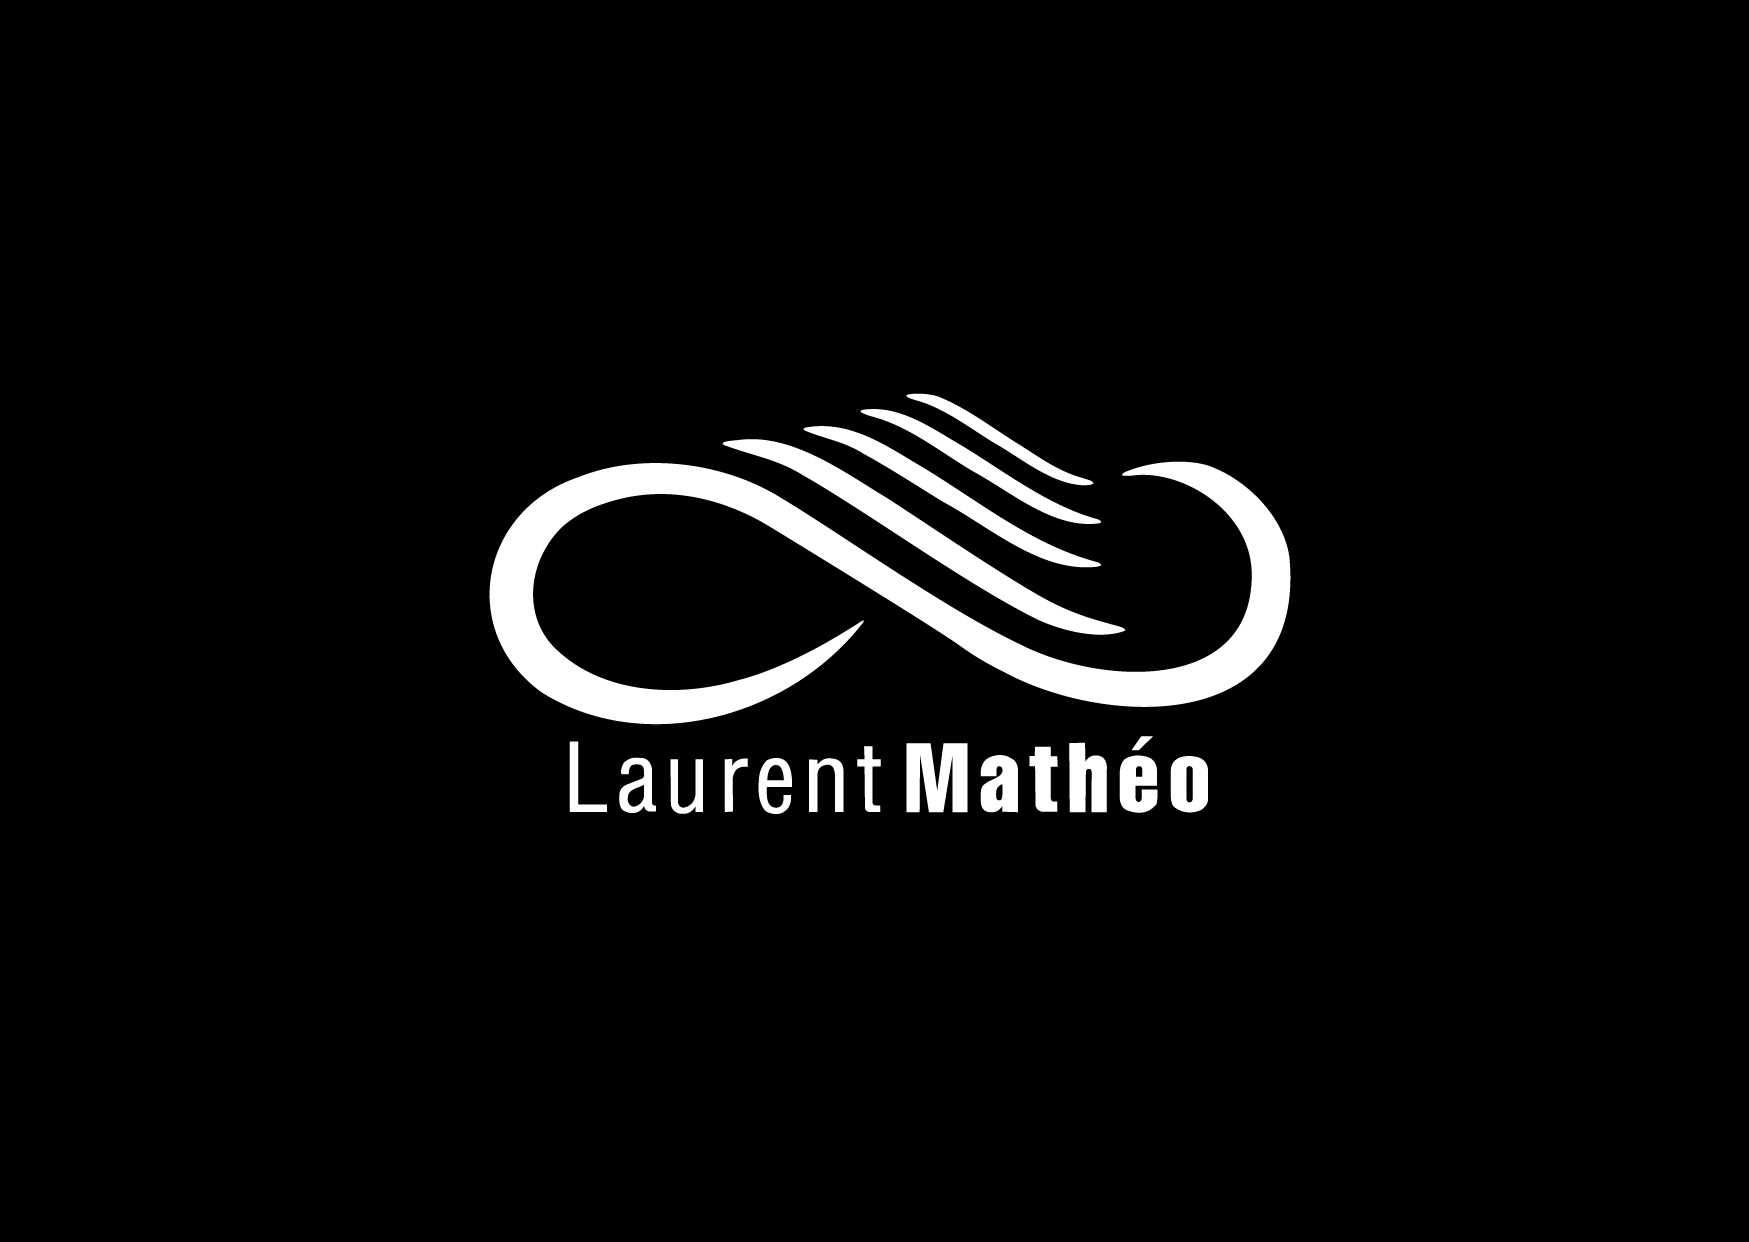 Offrez une carte cadeau Laurent Mathéo à un proche. Coupe, coiffure, balayage, soins ou encore cours pour apprendre à se coiffer, votre cadeau fera mouche.